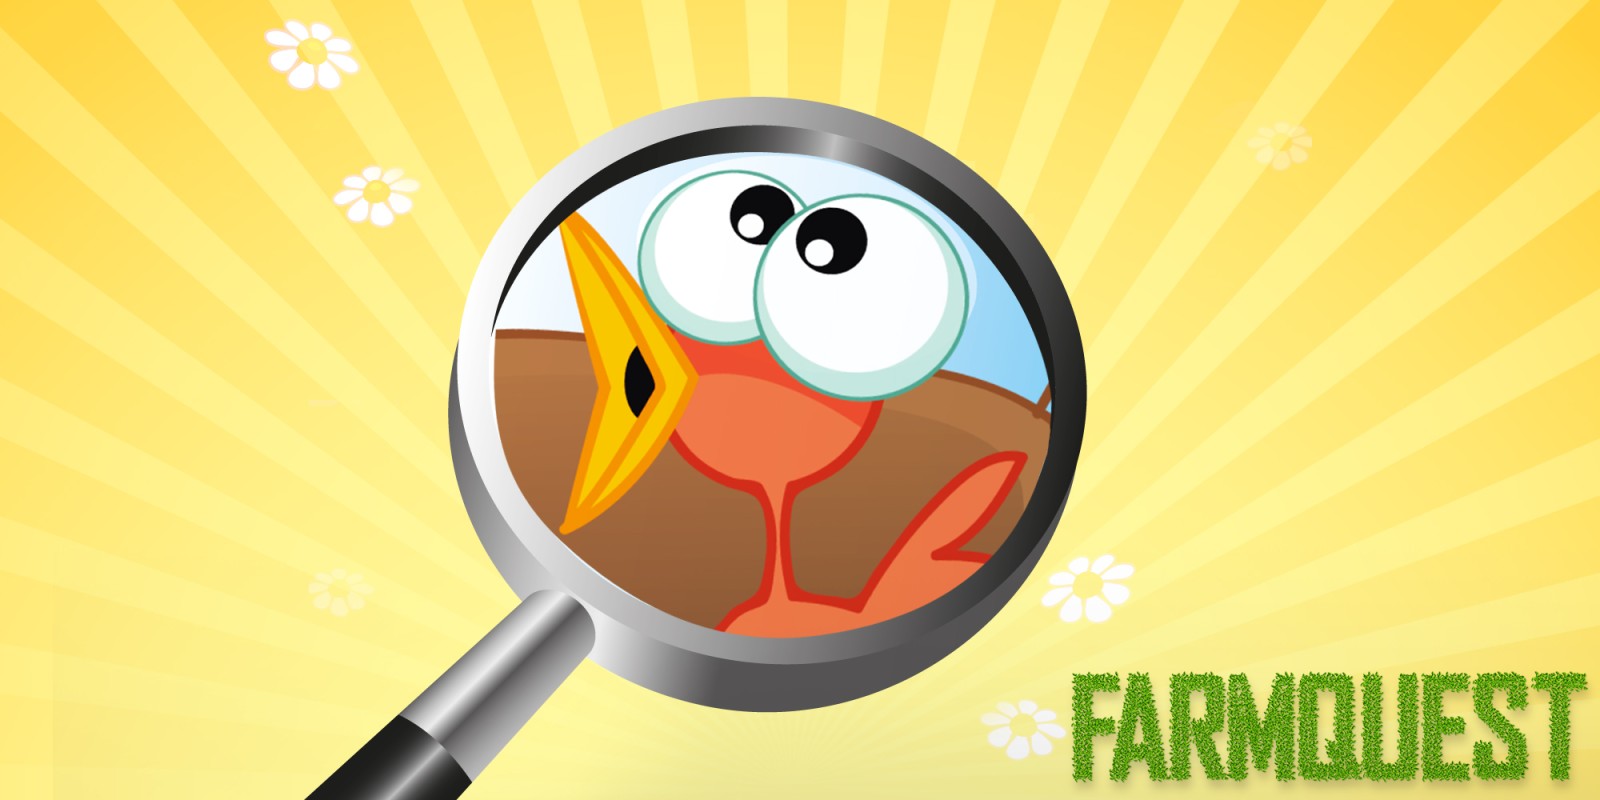 Farmquest - Un jeu de recherche d'objets cachés pour les enfants et les tout-petits